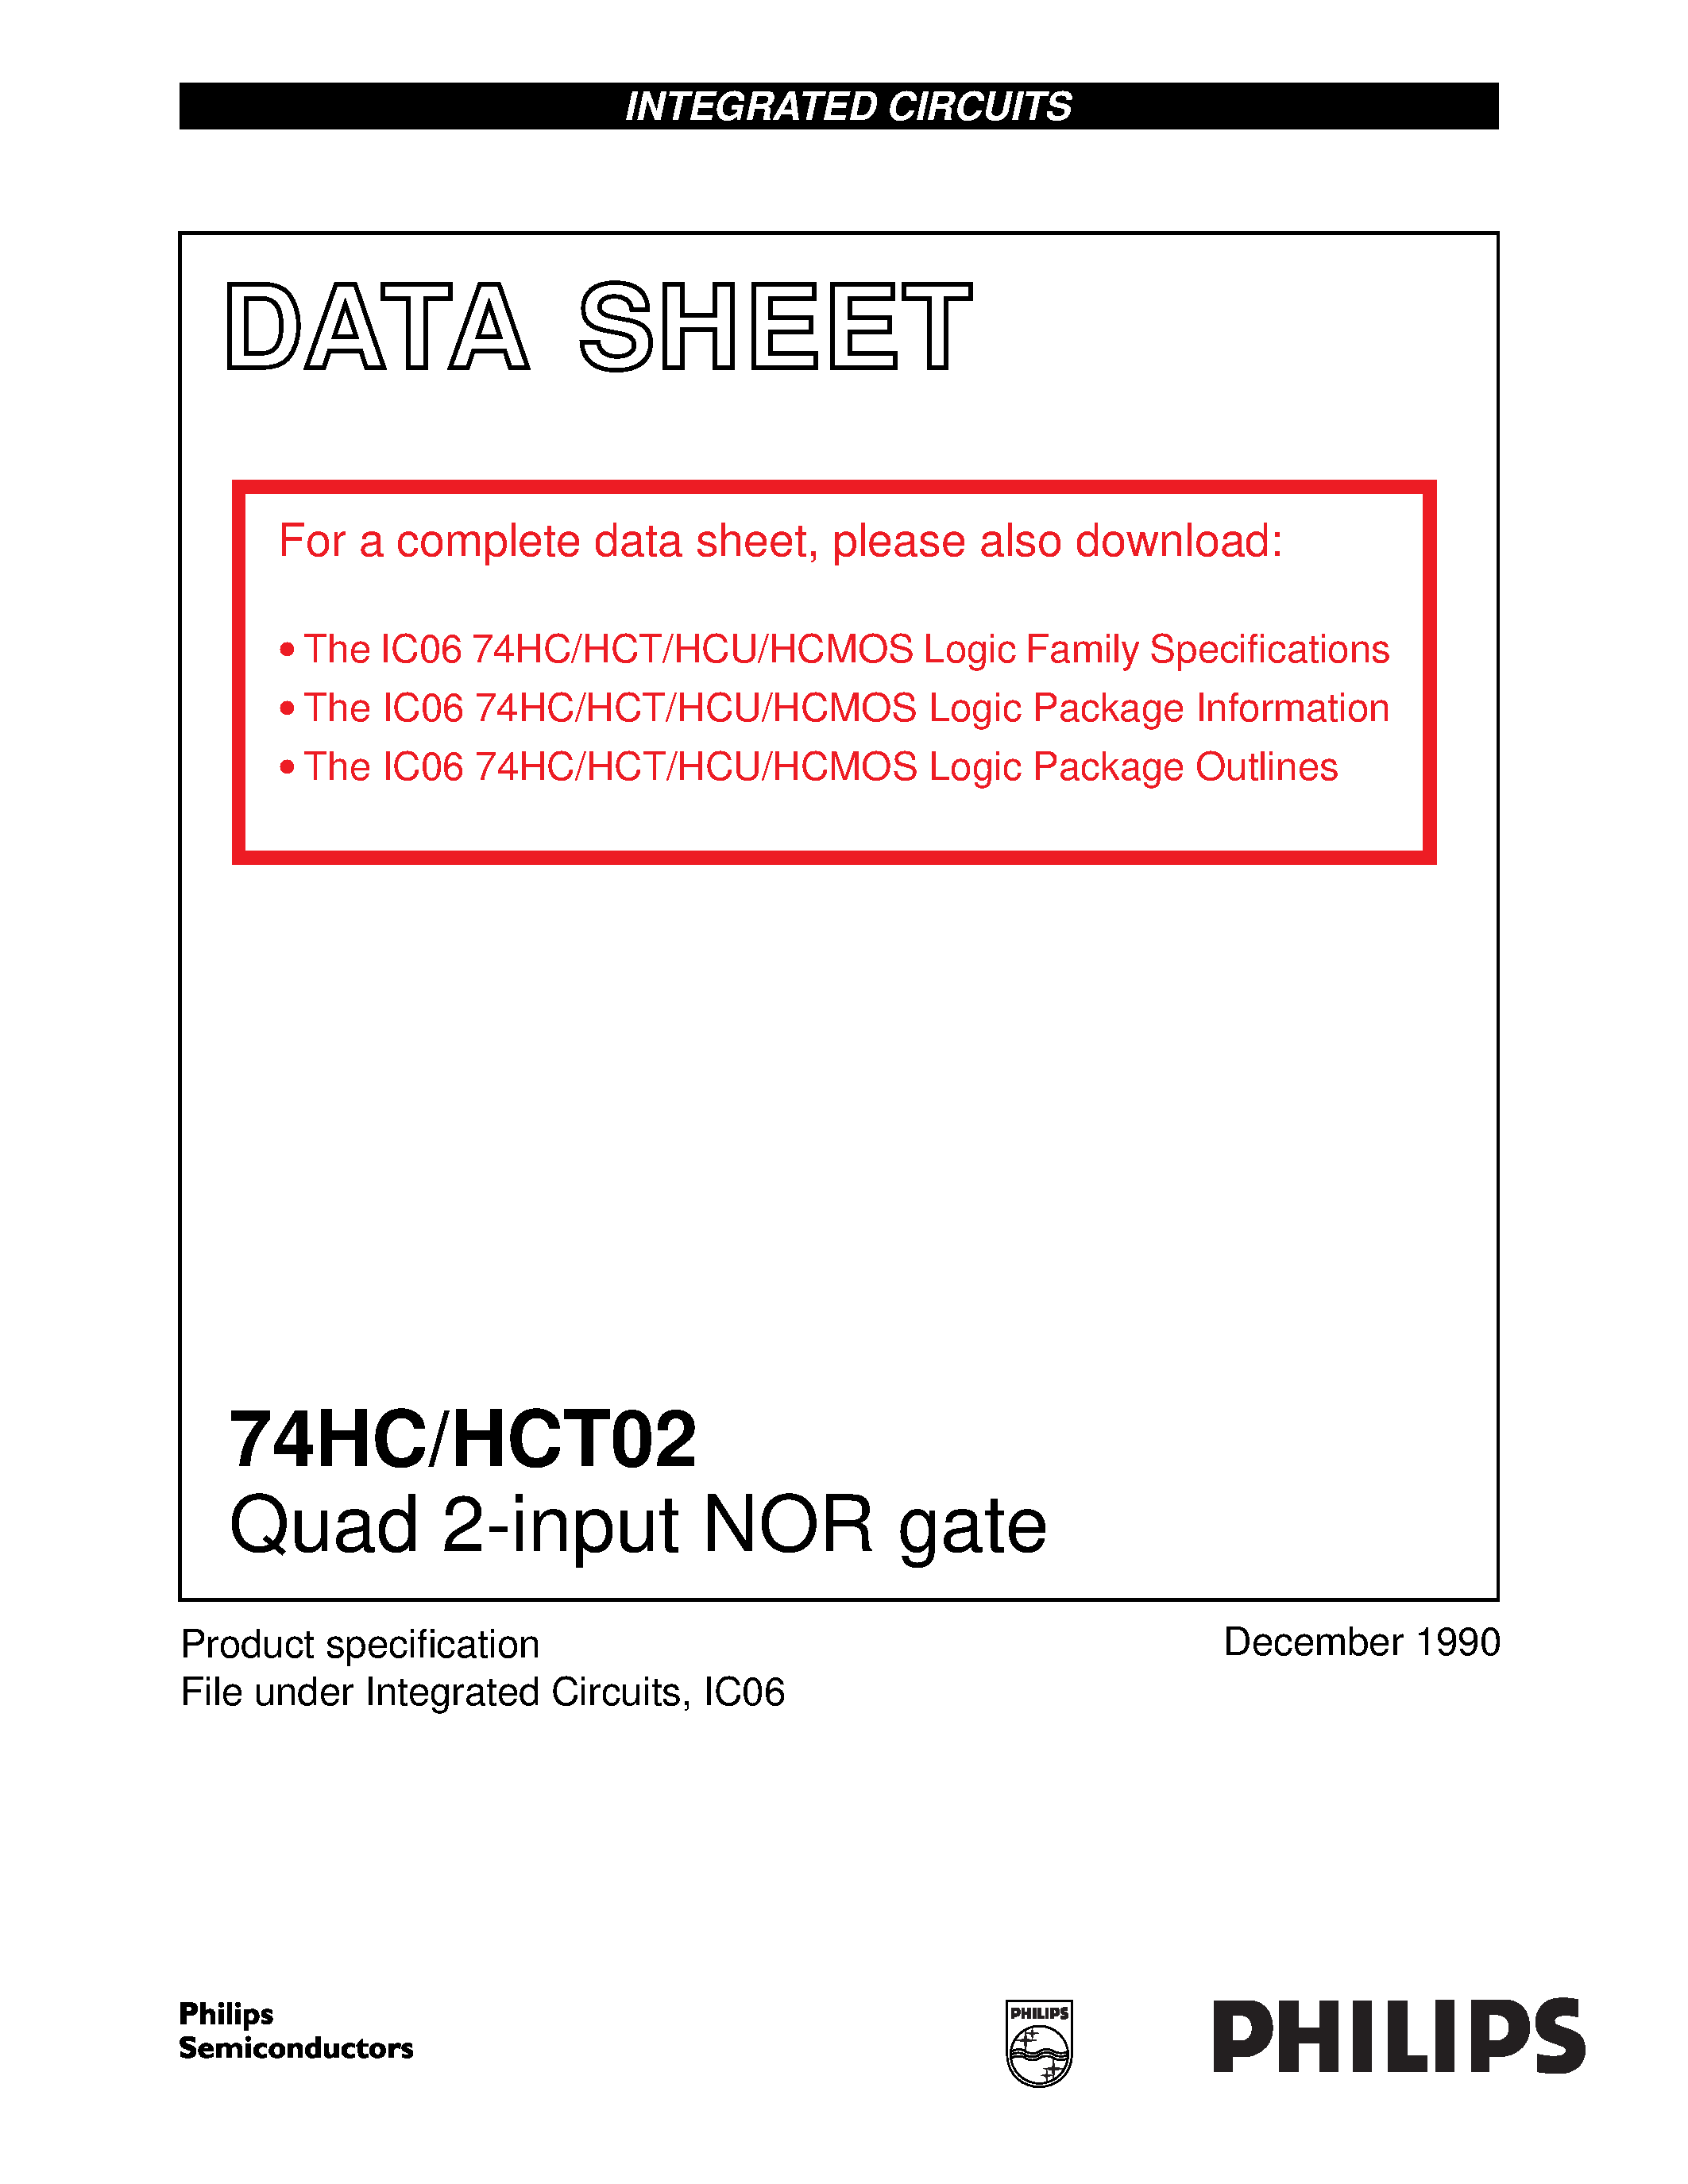 Даташит 74HCT02 - Quad 2-input NOR gate страница 1